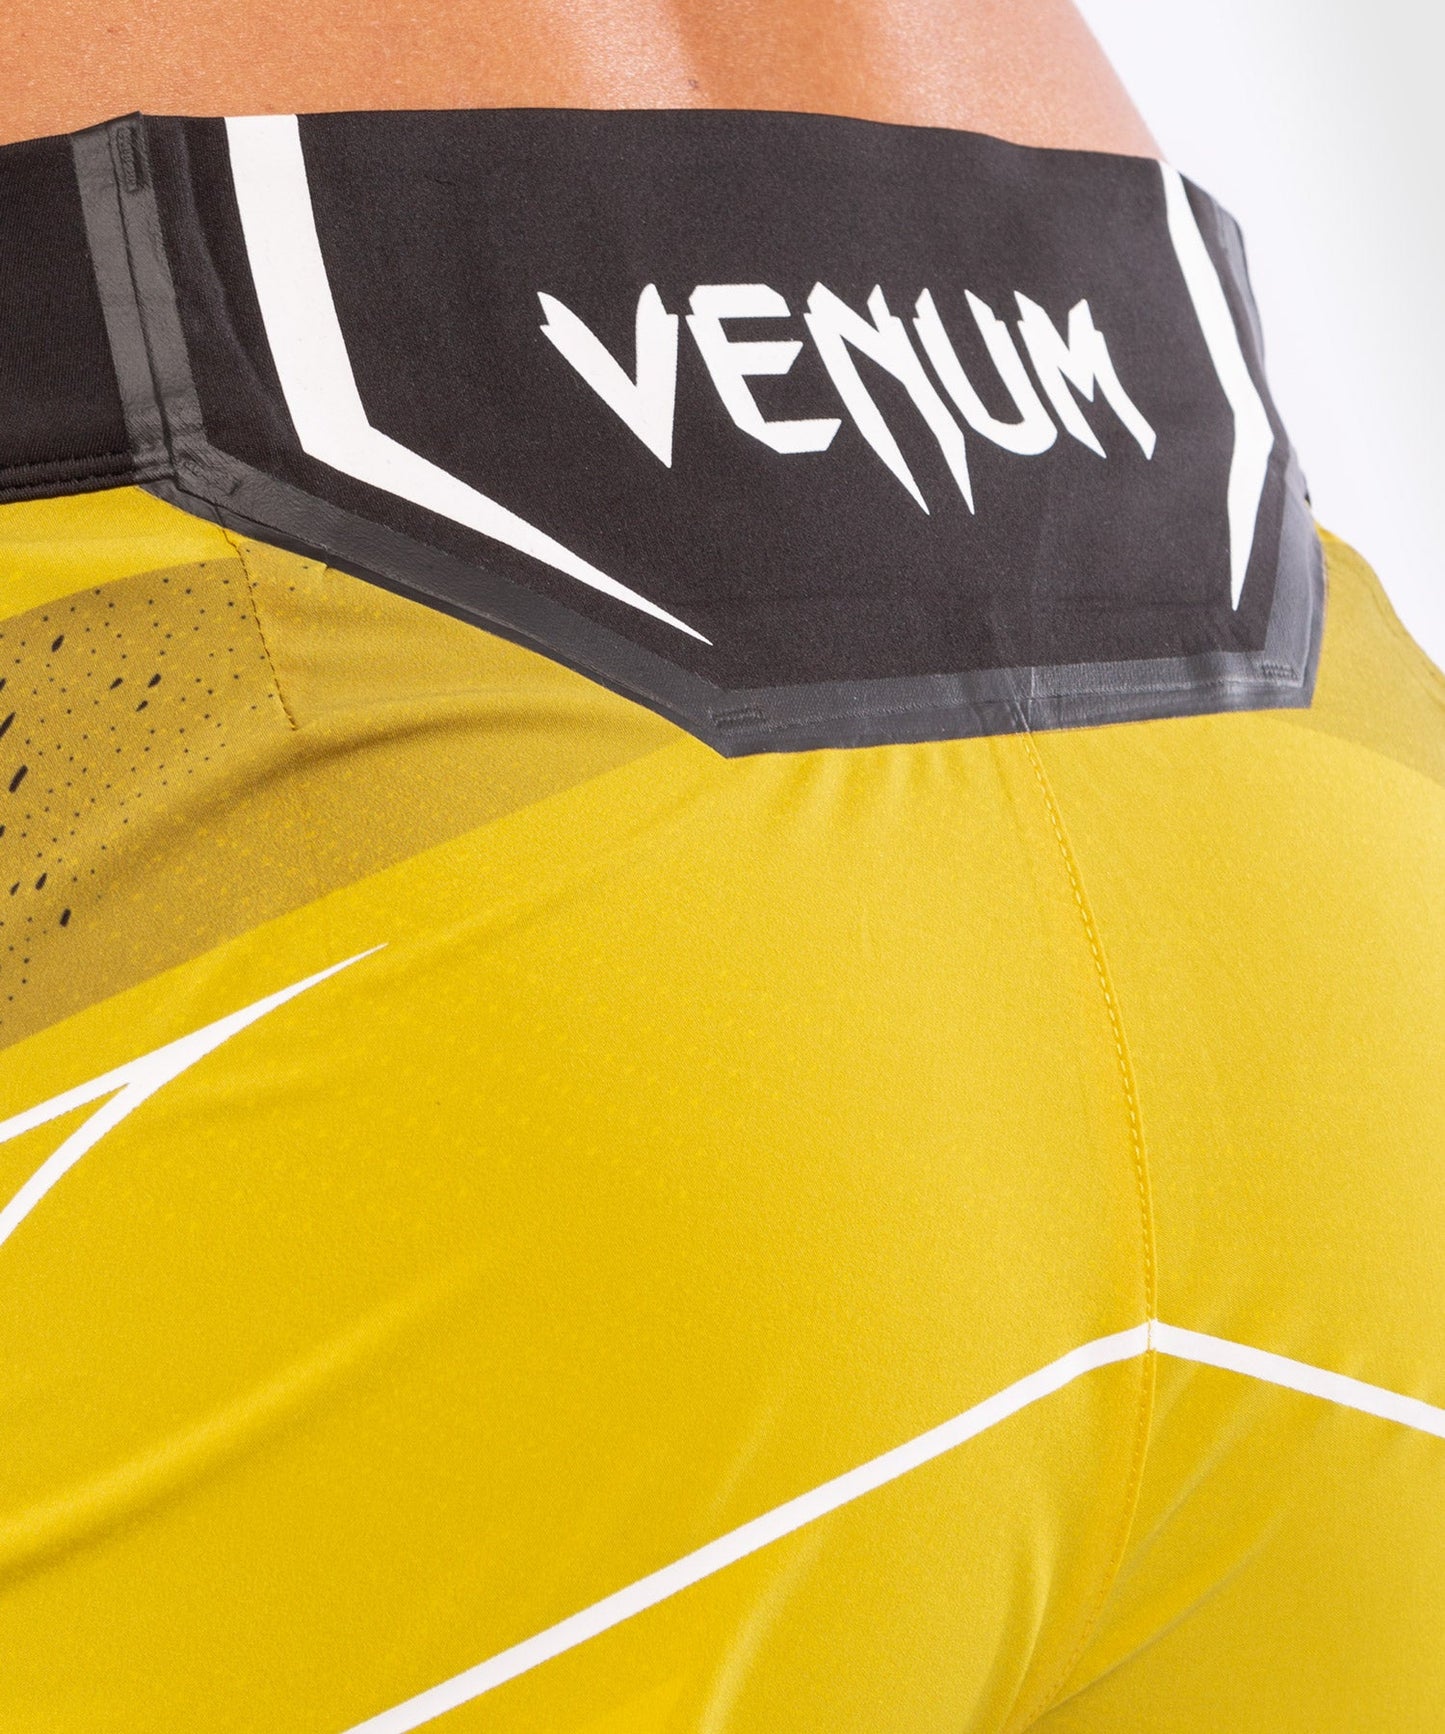 UFC Venum Authentic Fight Night Damen Shorts - Short Fit - Gelb